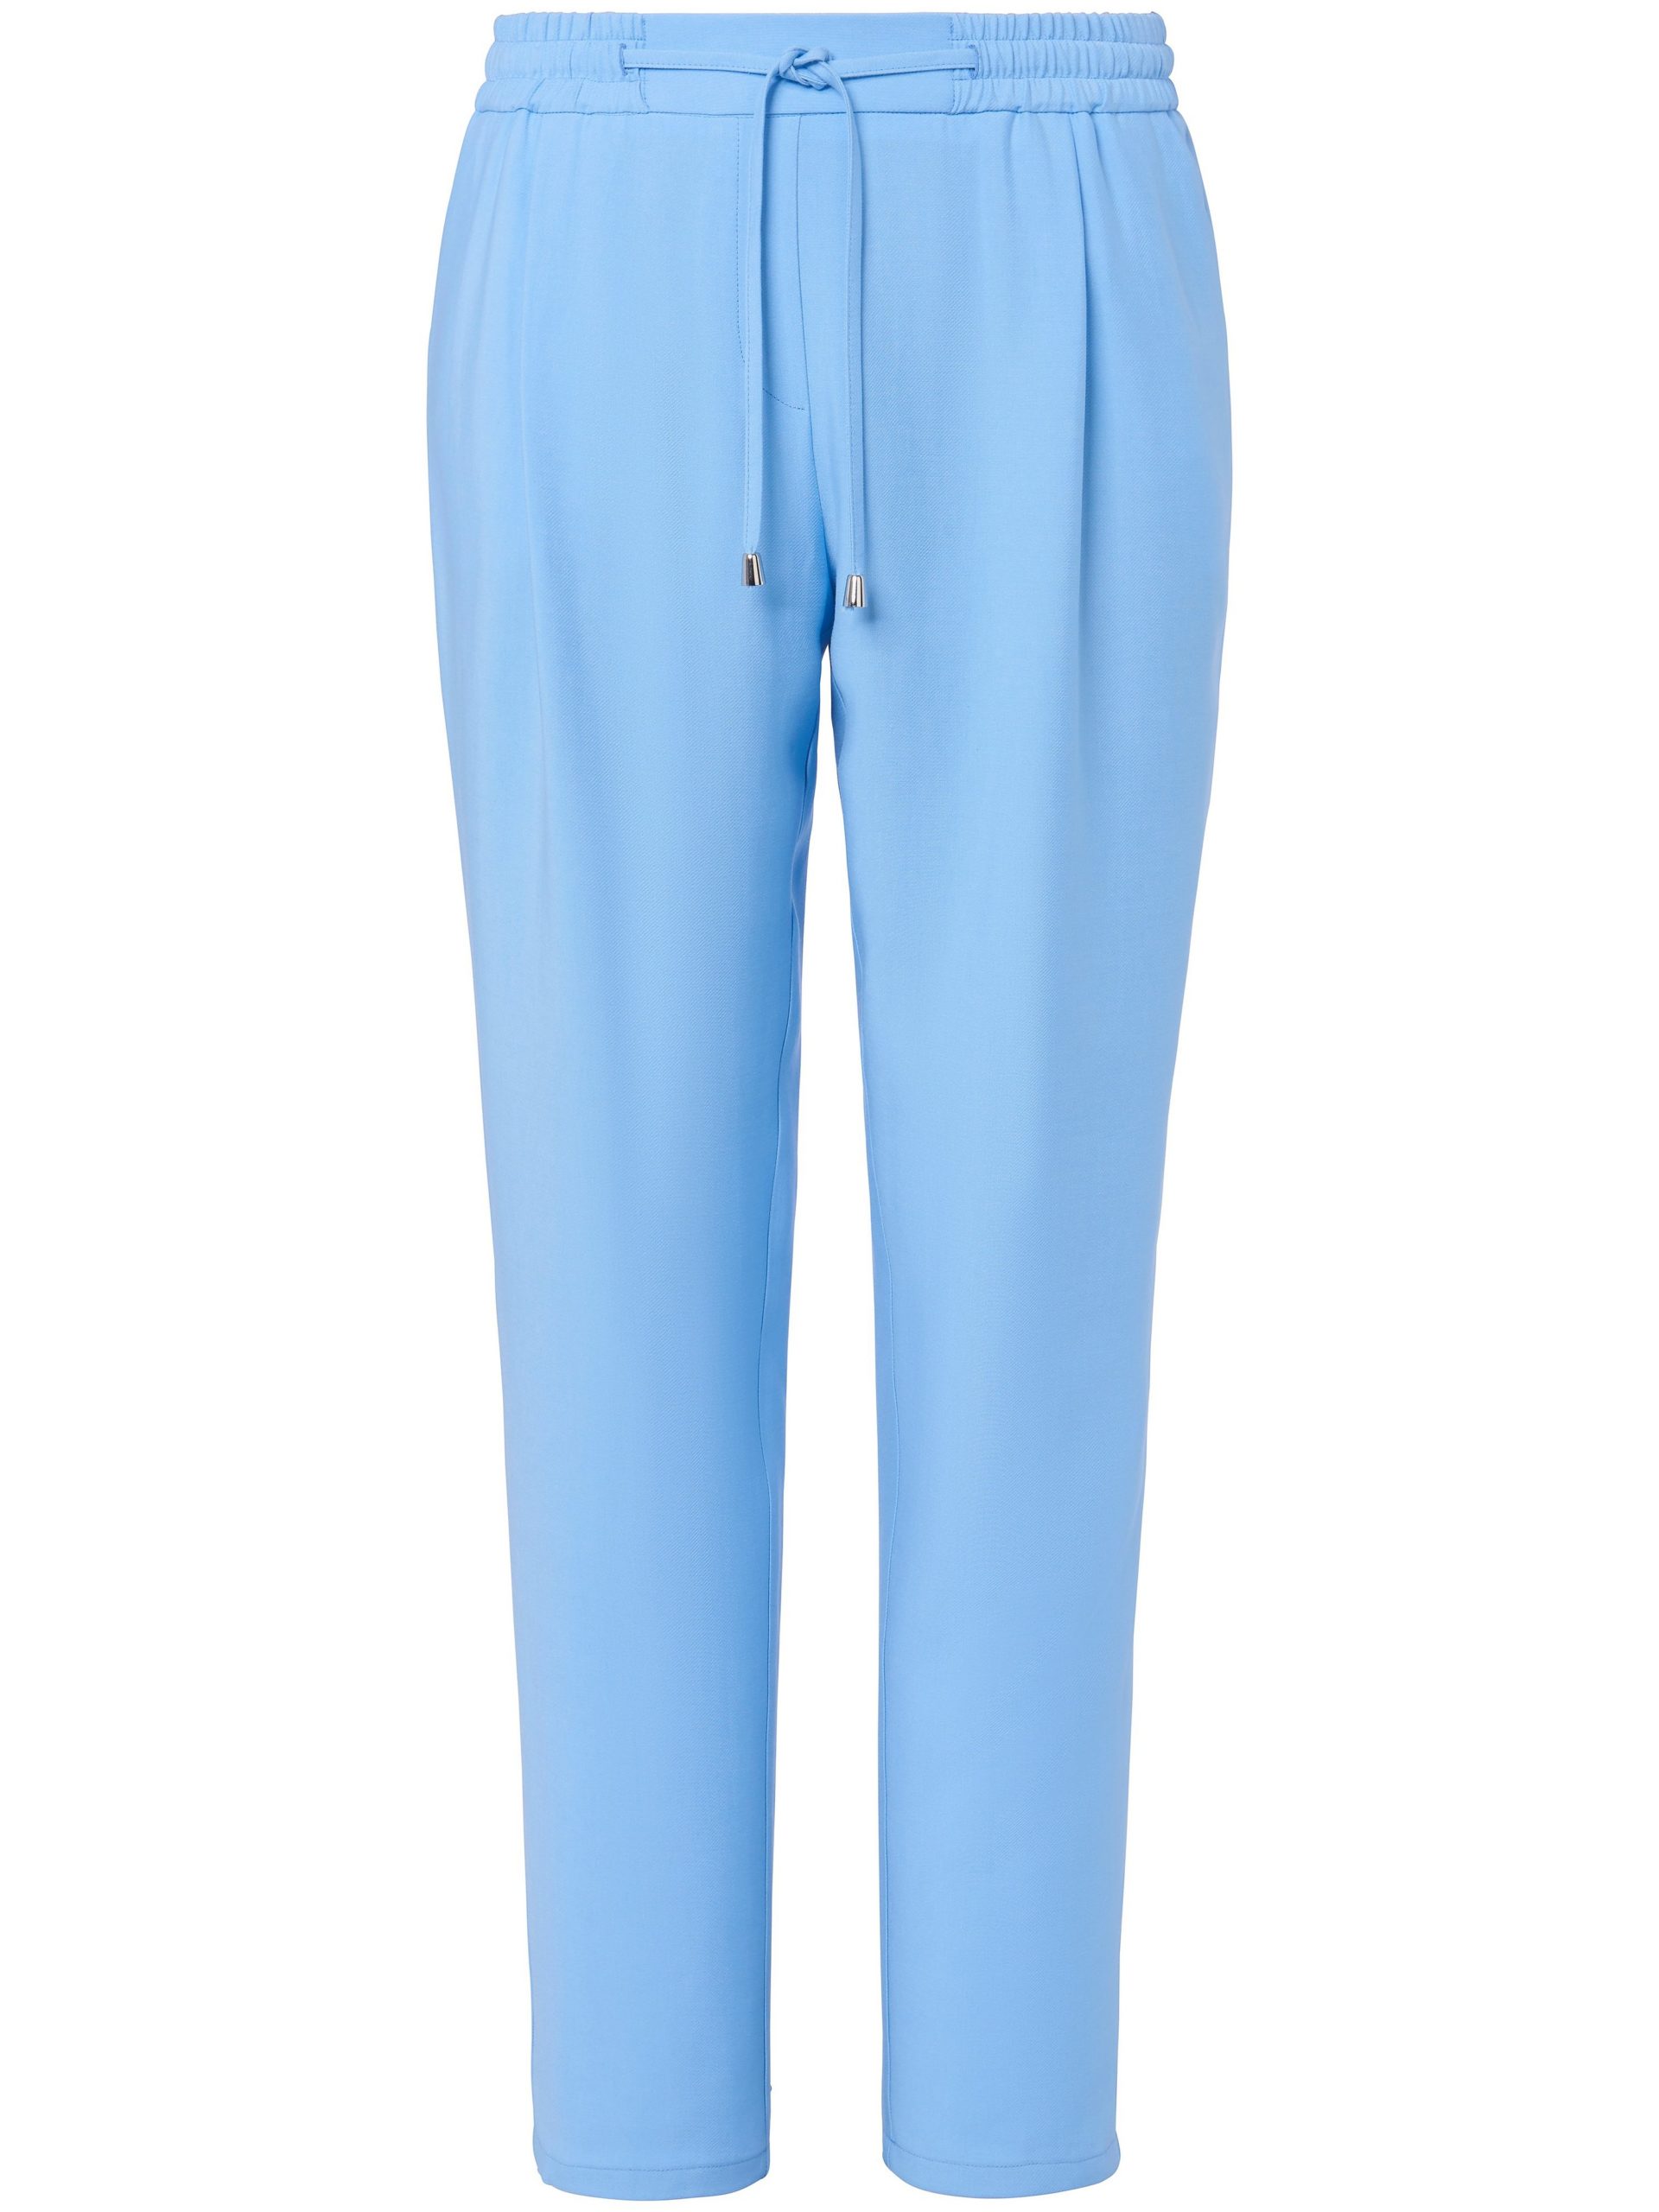 Broek in jogg-pant-stijl met elastische band Van Emilia Lay blauw Kopen